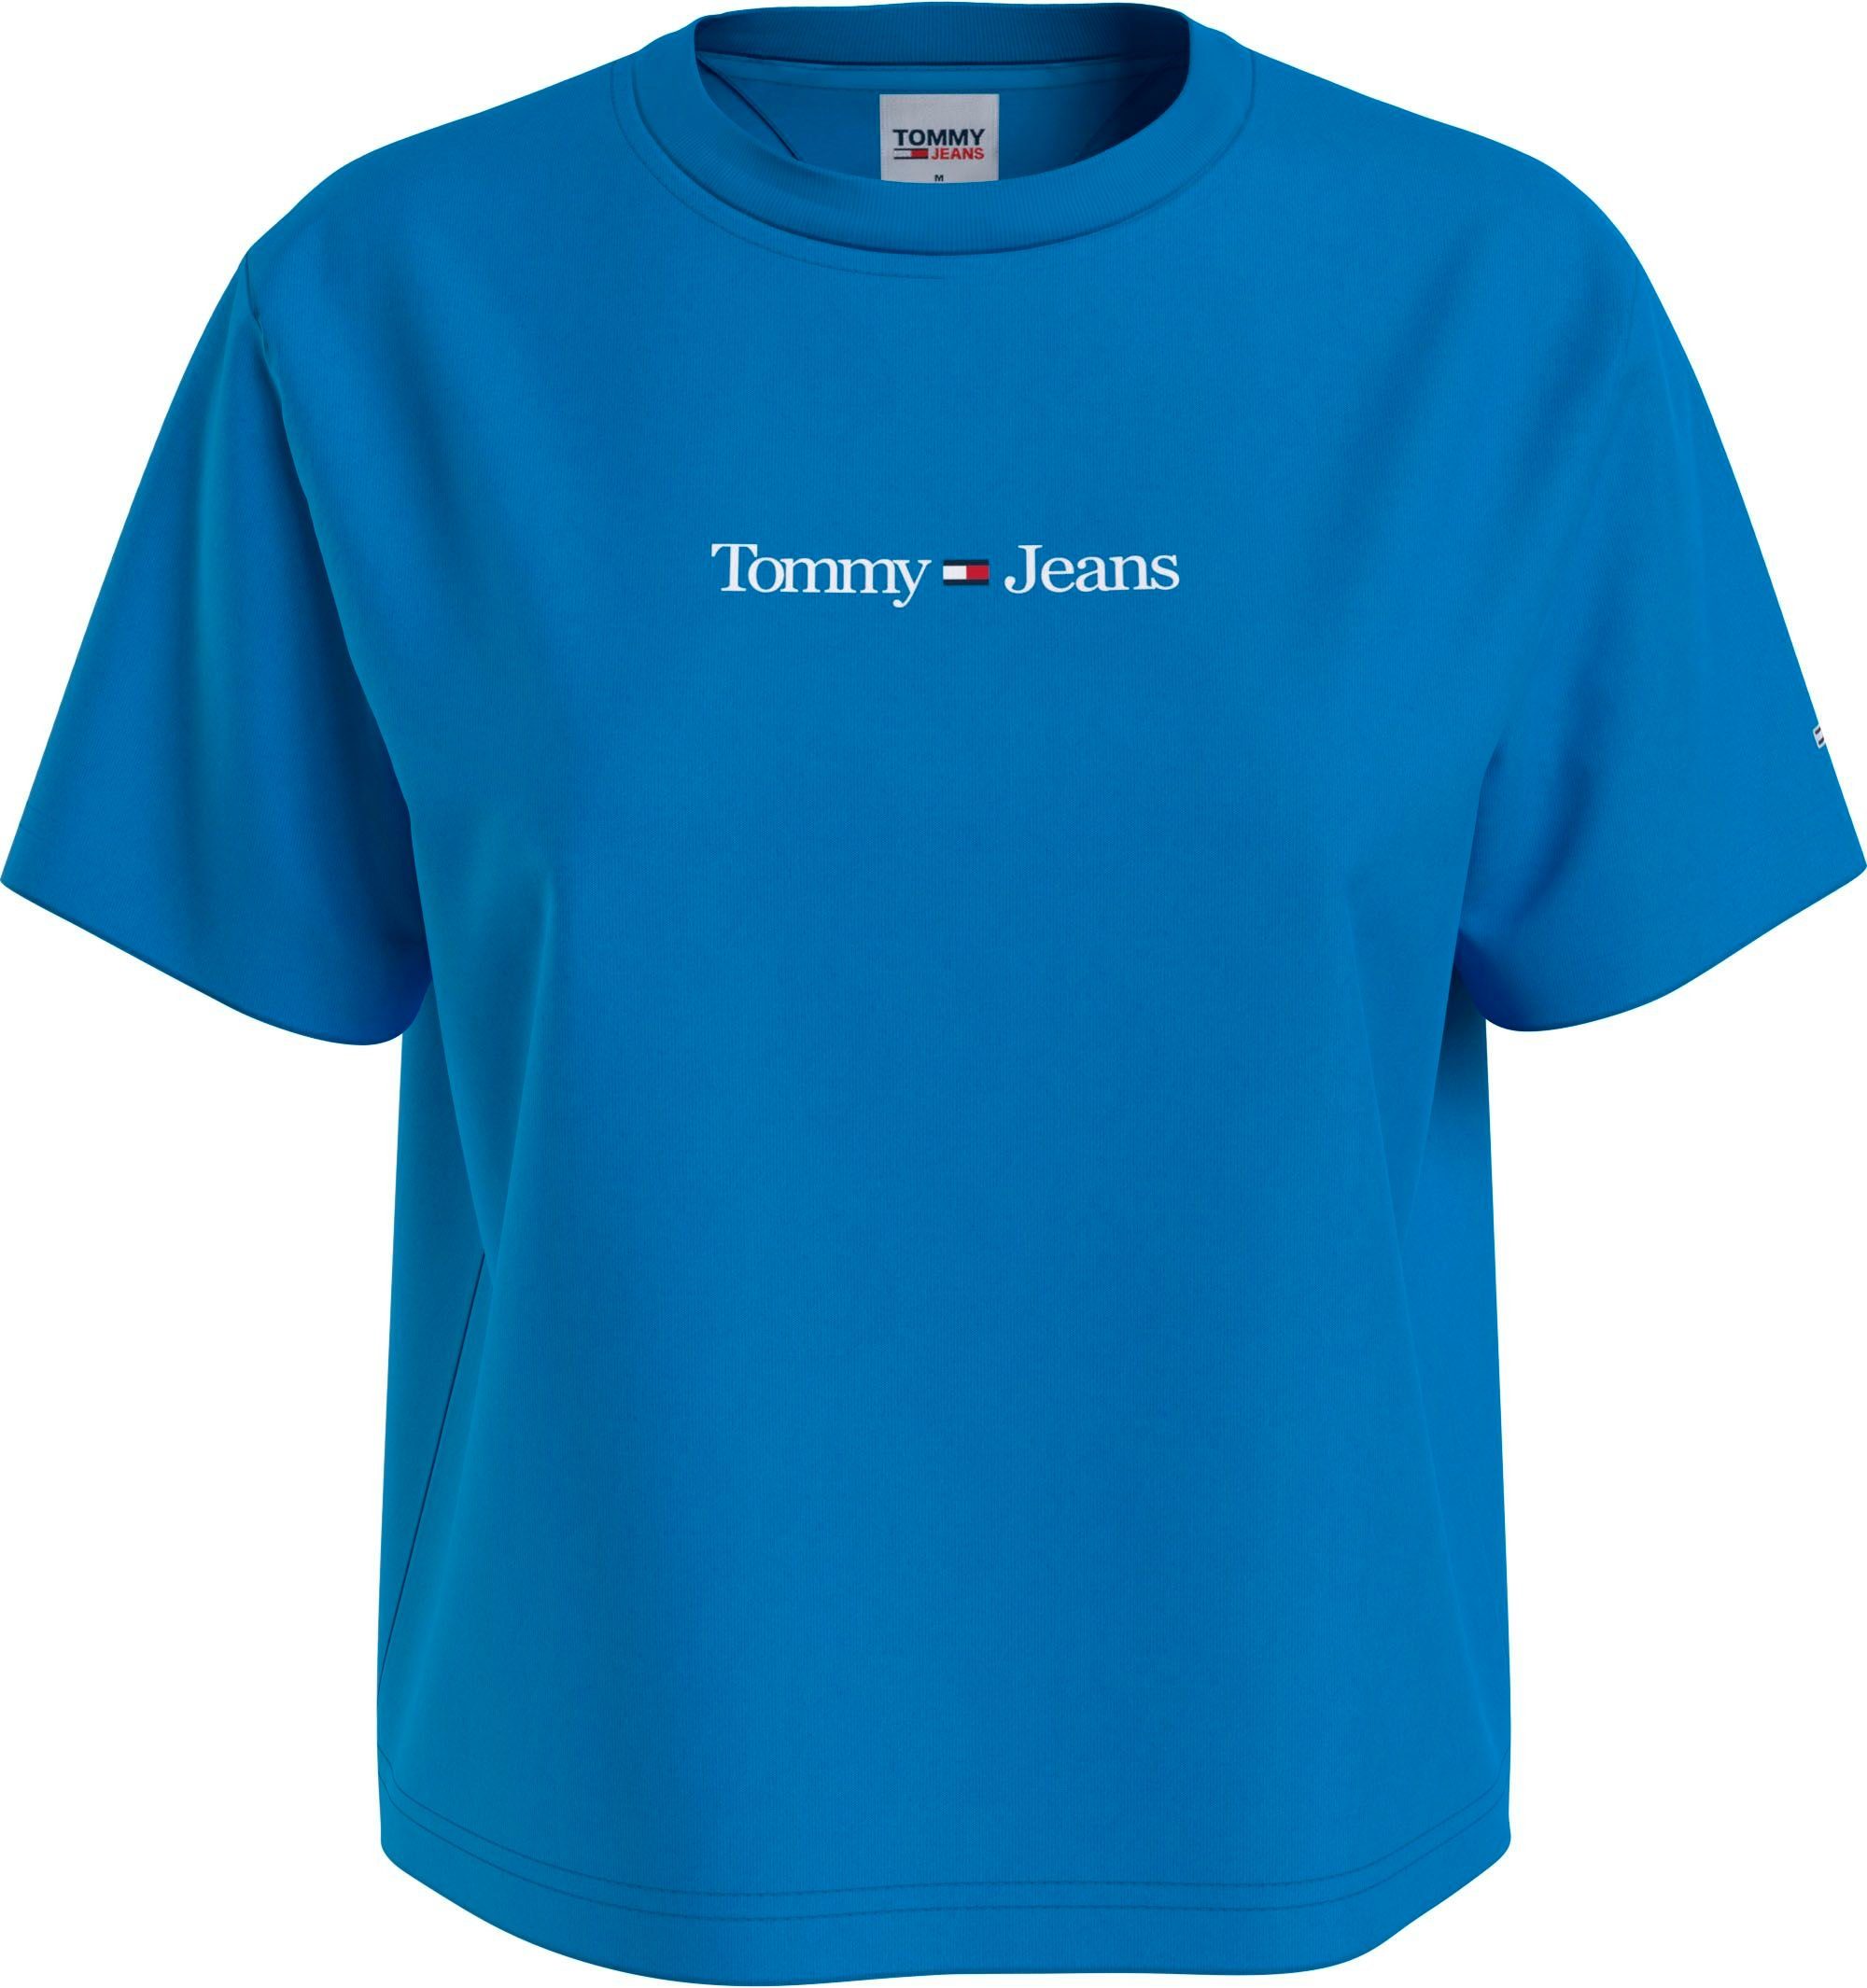 [Dies ist ein supergünstiger Versandhandel] Tommy Jeans CLS Jeans Kurzarmshirt Linear mit Tommy LINEAR TEE blau TJW SERIF Logoschriftzug